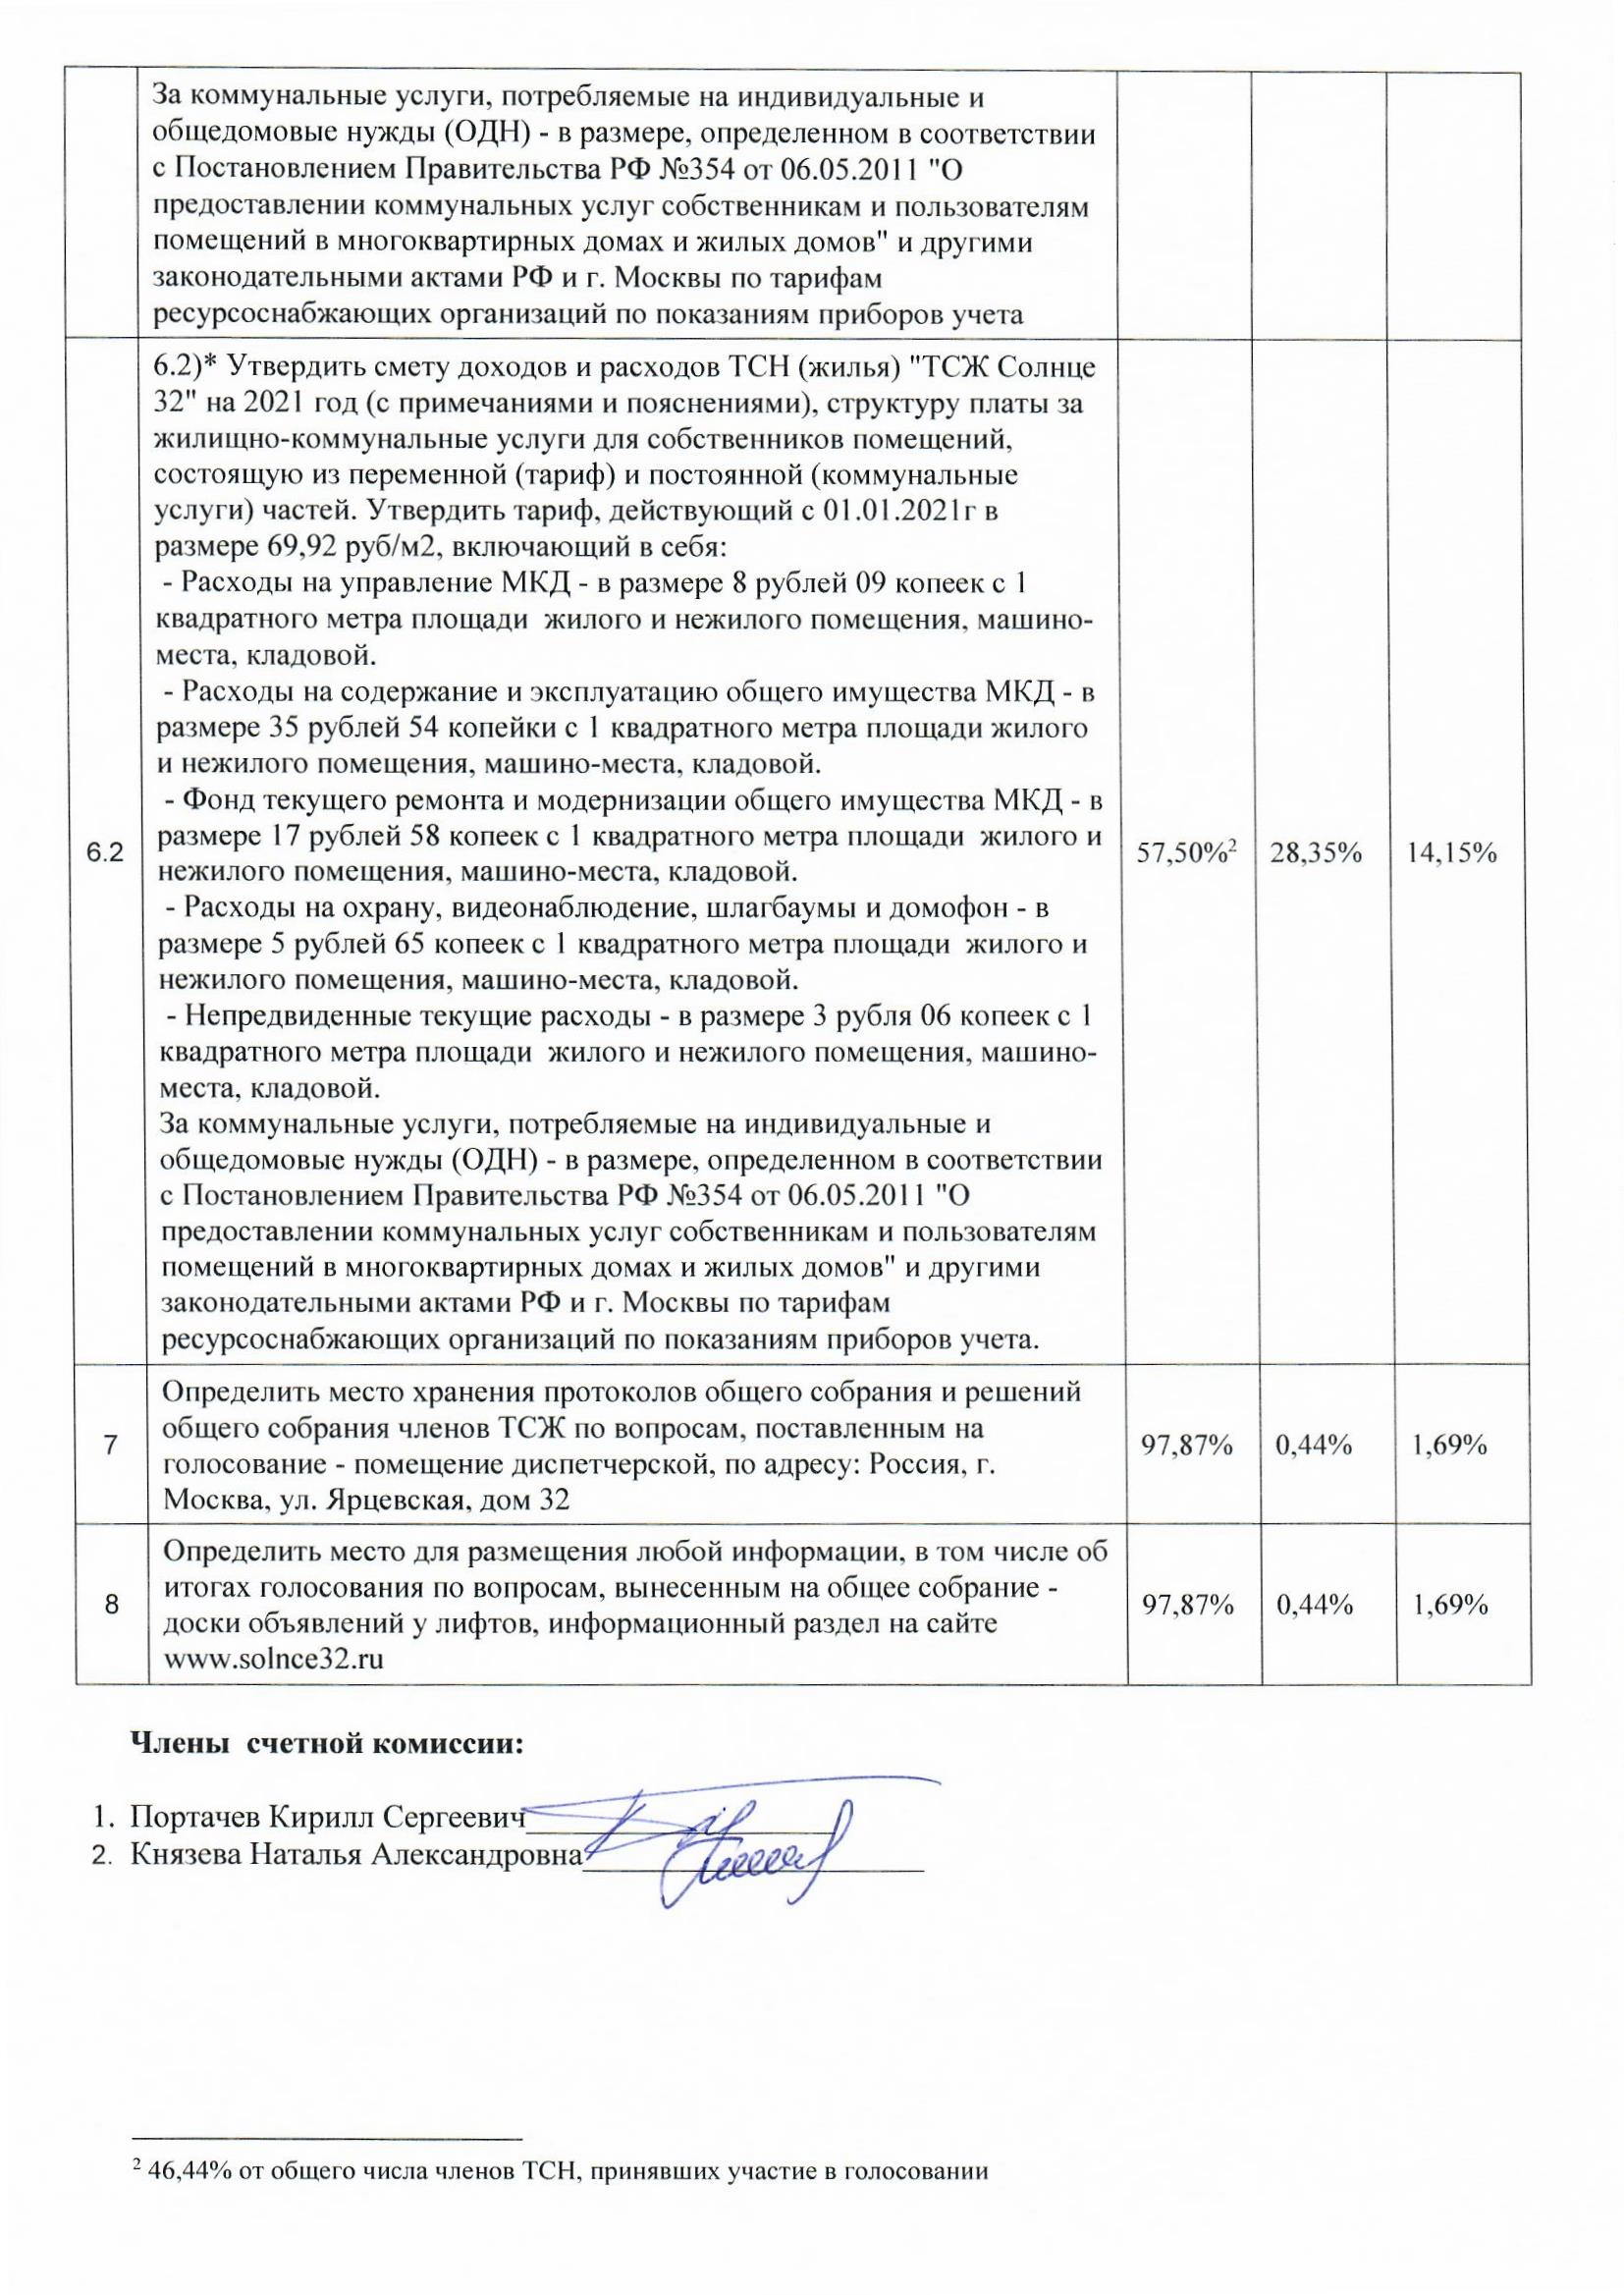 Протокол счетной комиссии от 04.01.2021 г. стр.2